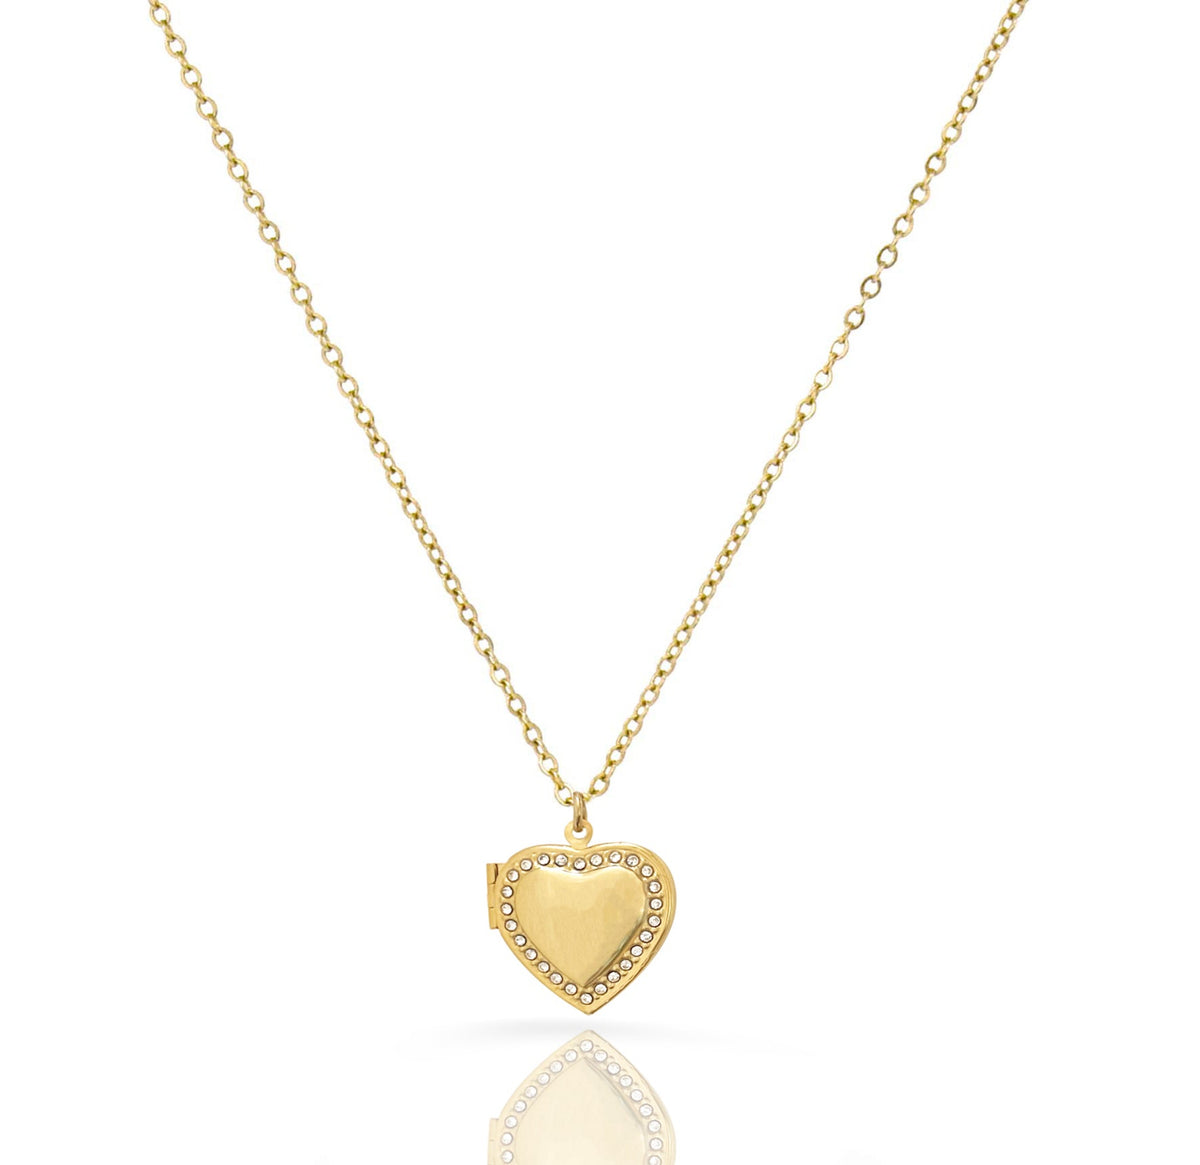 gold heart locket necklace waterproof jewelry